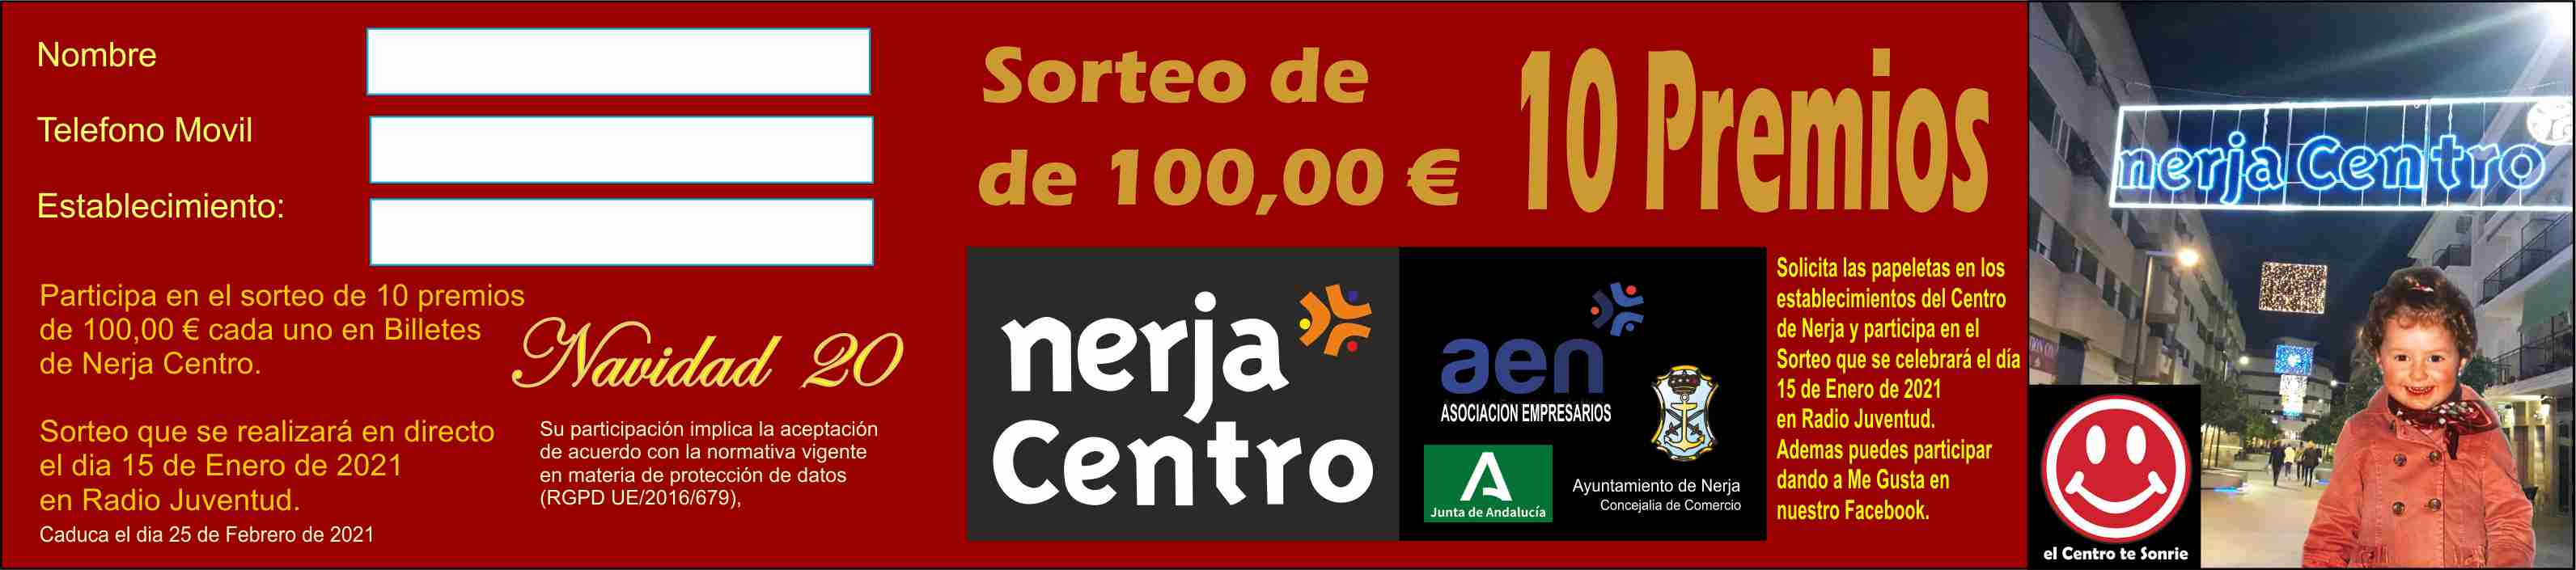 SORTEO DE 1O PREMIOS DE 100,00 € – NERJA CENTRO NAVIDAD 2020